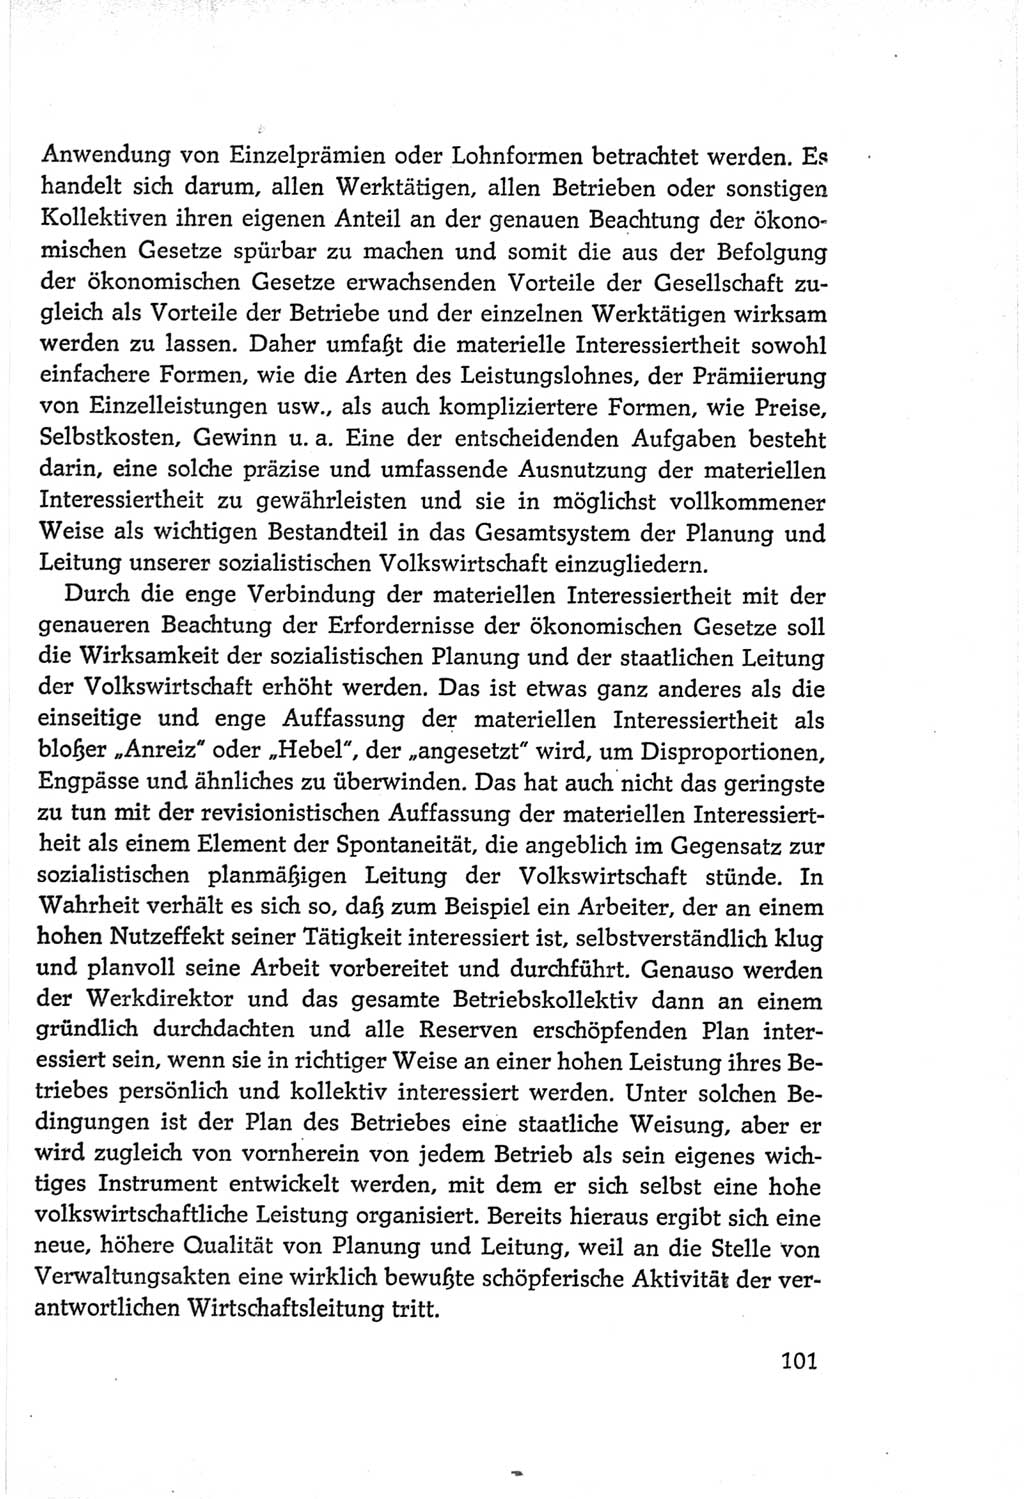 Protokoll der Verhandlungen des Ⅵ. Parteitages der Sozialistischen Einheitspartei Deutschlands (SED) [Deutsche Demokratische Republik (DDR)] 1963, Band Ⅰ, Seite 101 (Prot. Verh. Ⅵ. PT SED DDR 1963, Bd. Ⅰ, S. 101)